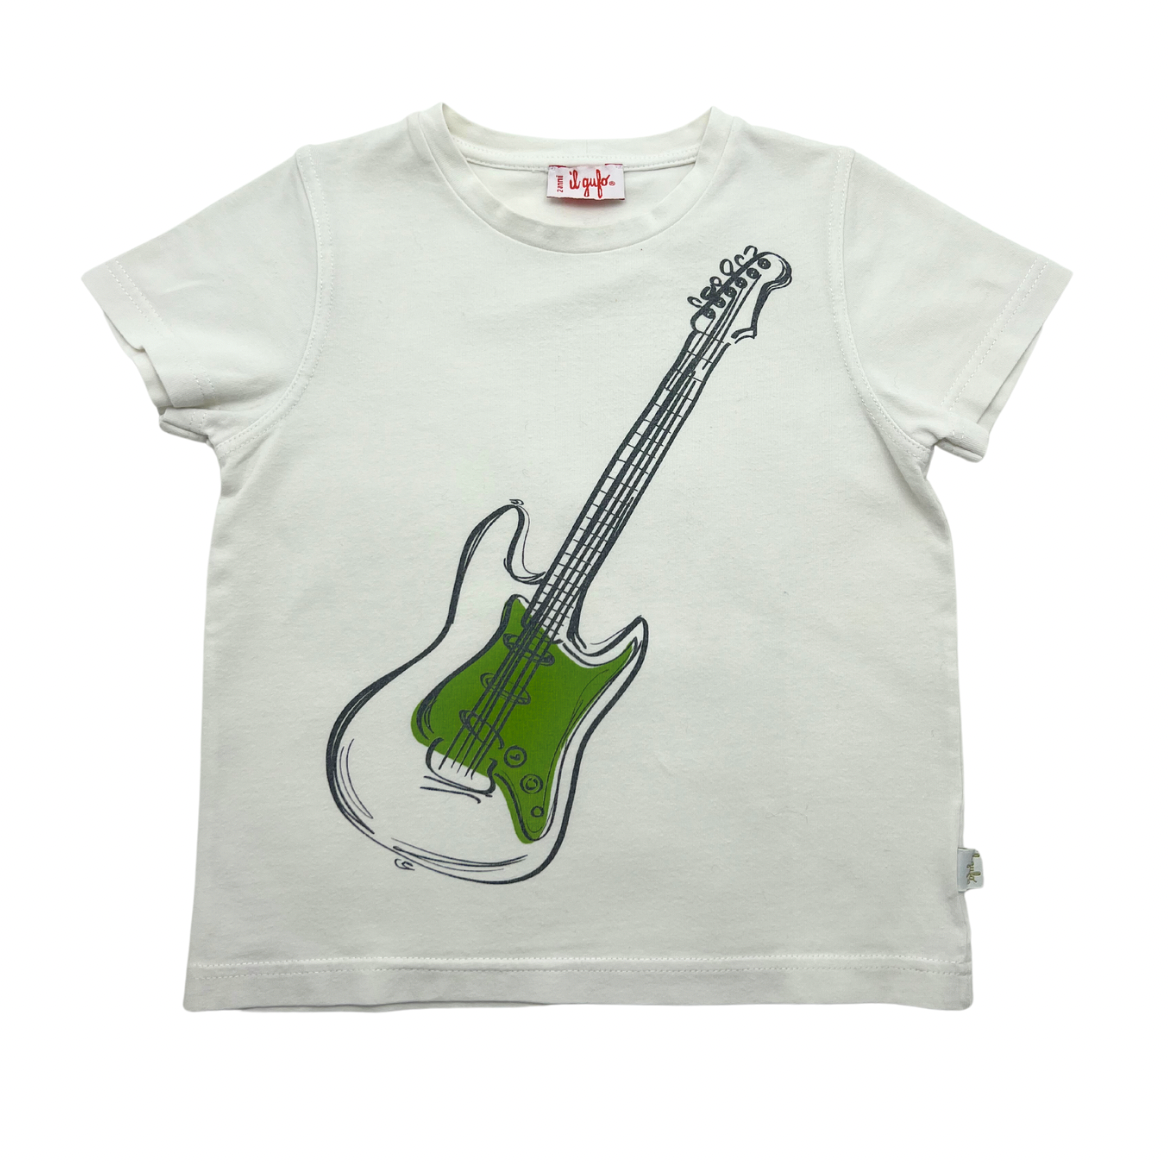 IL GUFO - T-shirt guitare - 2 ans